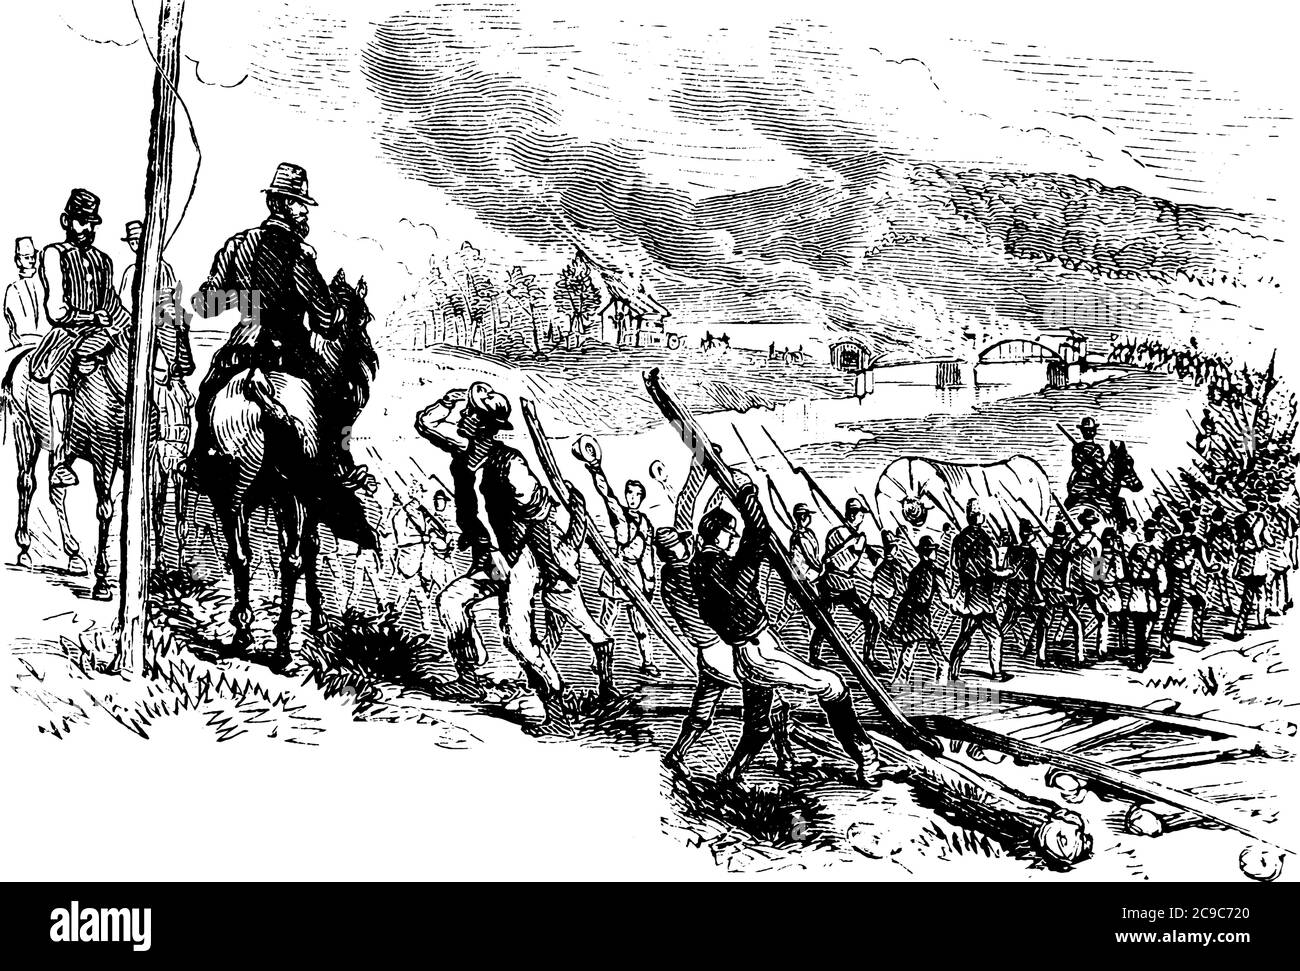 Un'immagine che raffigura la marcia del generale Sherman al mare durante la guerra civile, con uomini a cavallo, disegno di linee d'epoca o illustrazione dell'incisione. Illustrazione Vettoriale